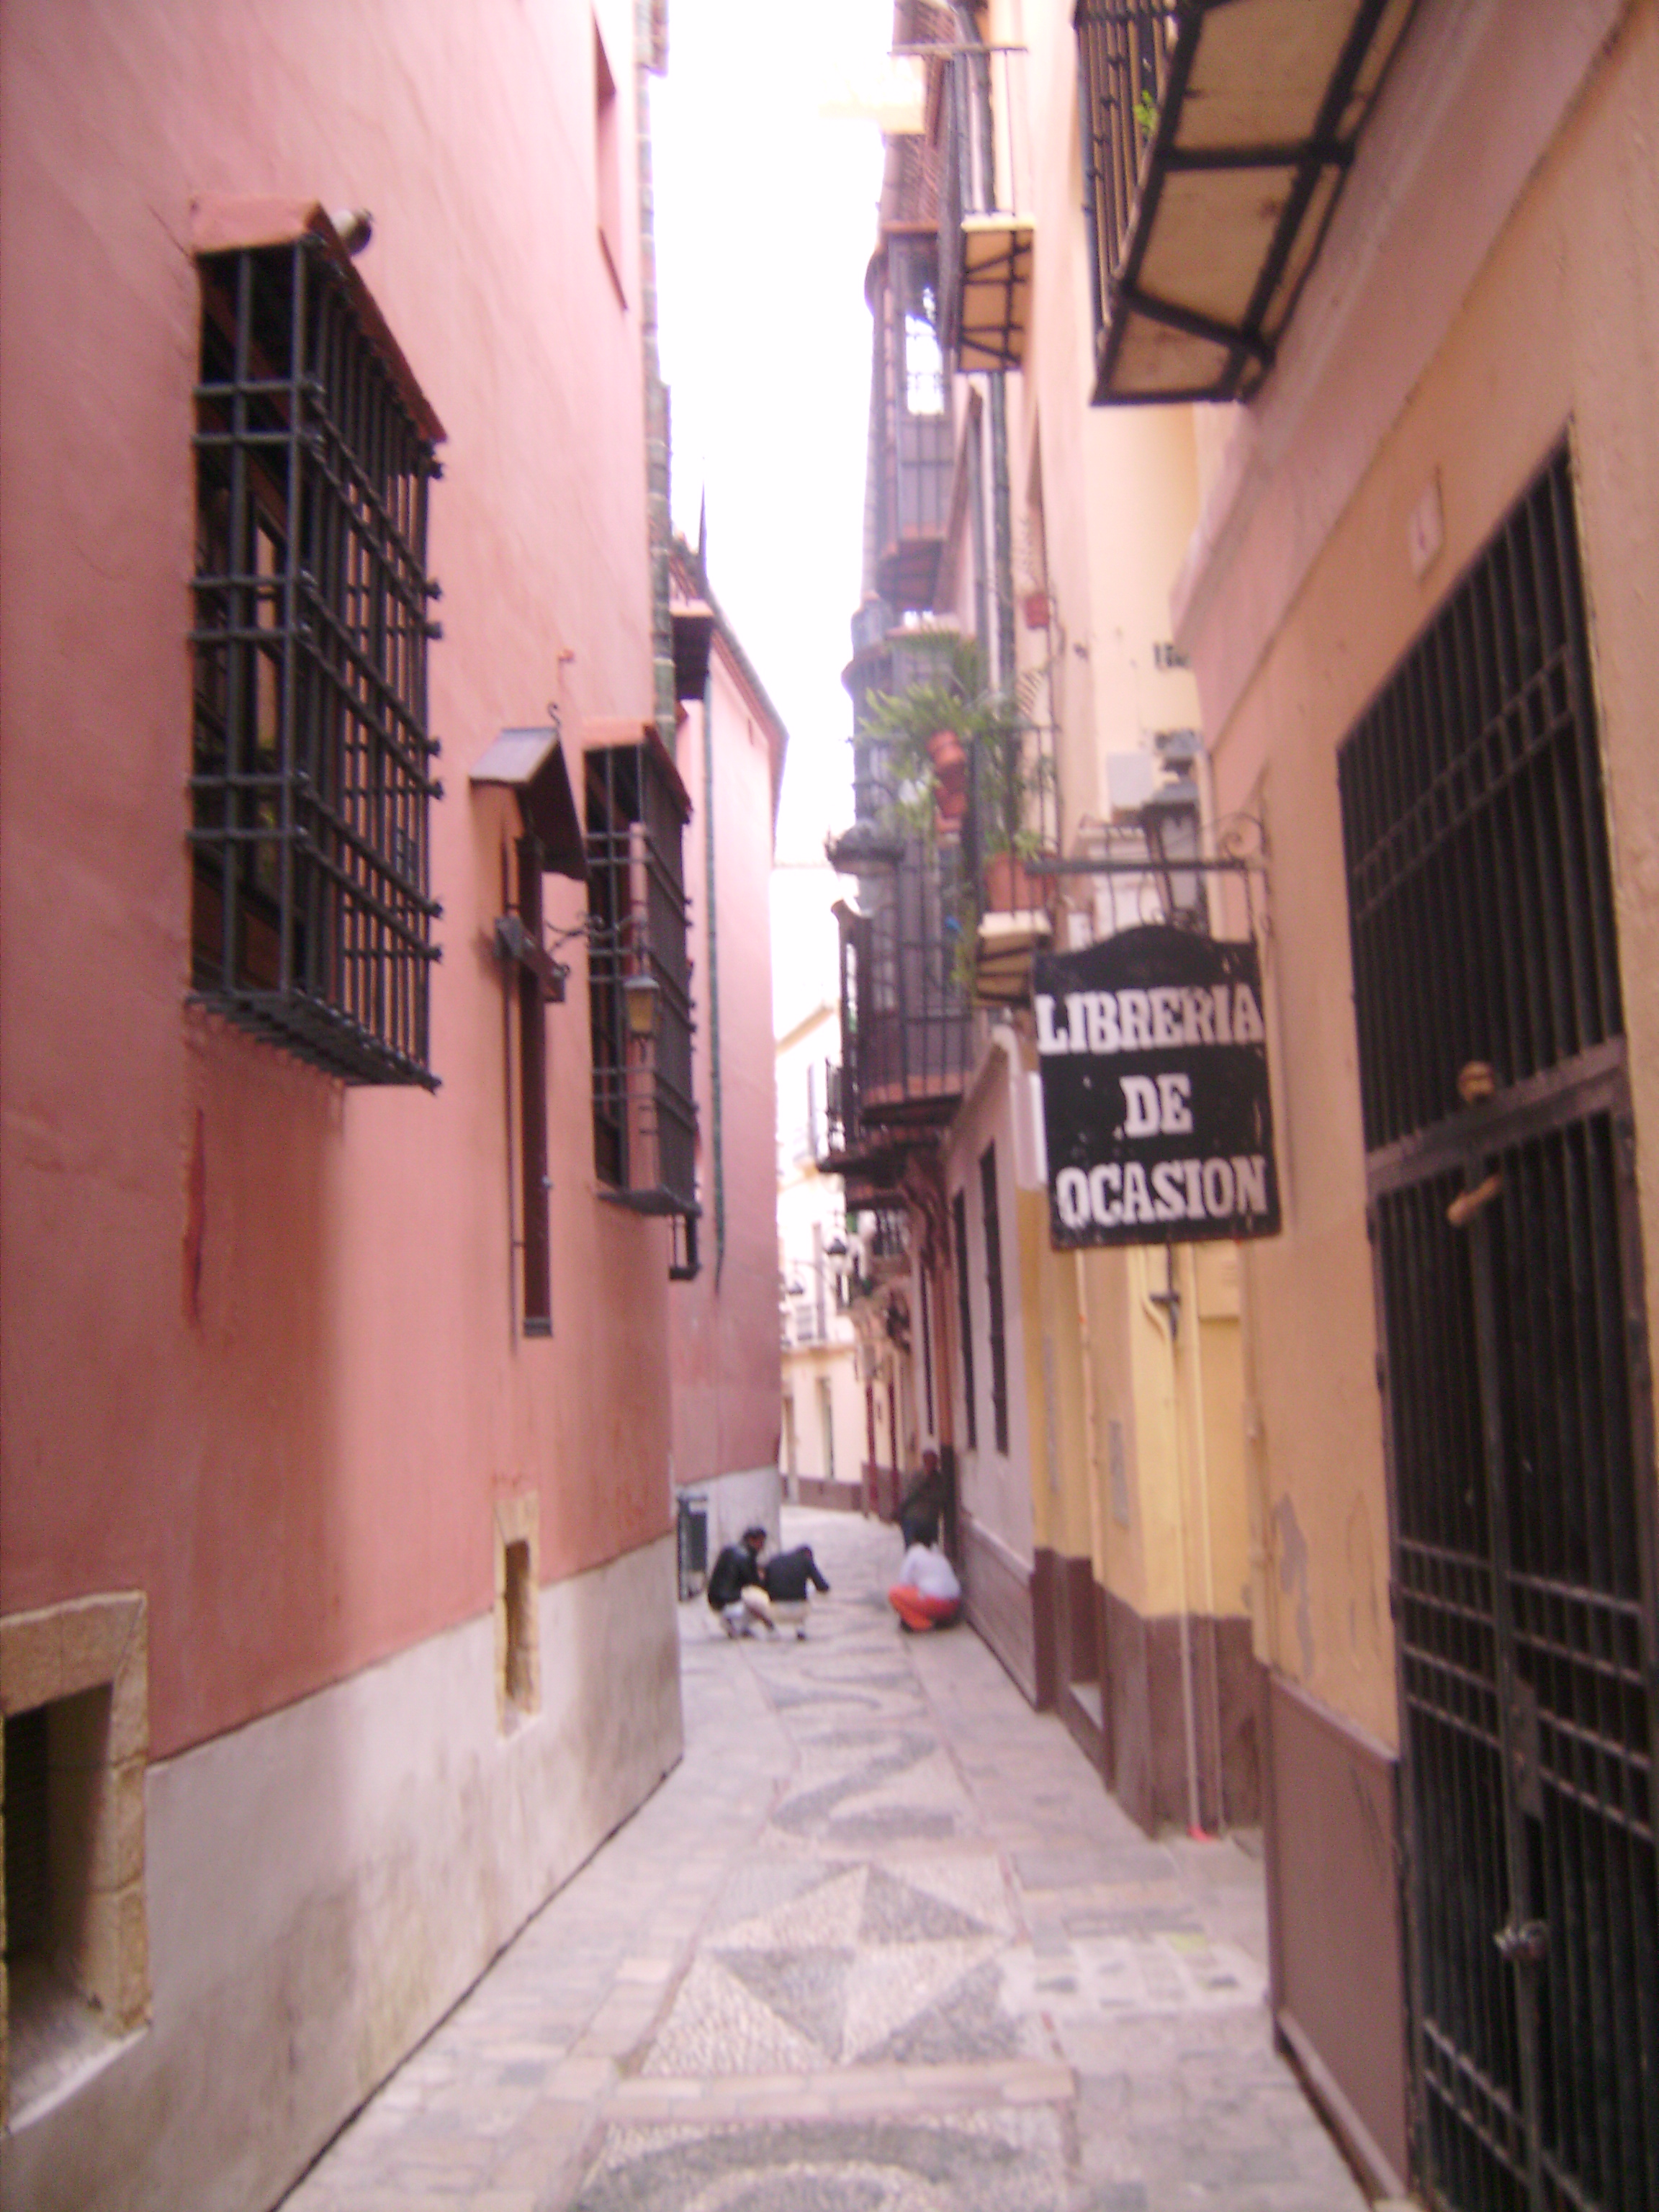 Malaga óvárosa nem ANNYIRA atraktív, mint akár Marbella vagy Córdoba óvárosa, 